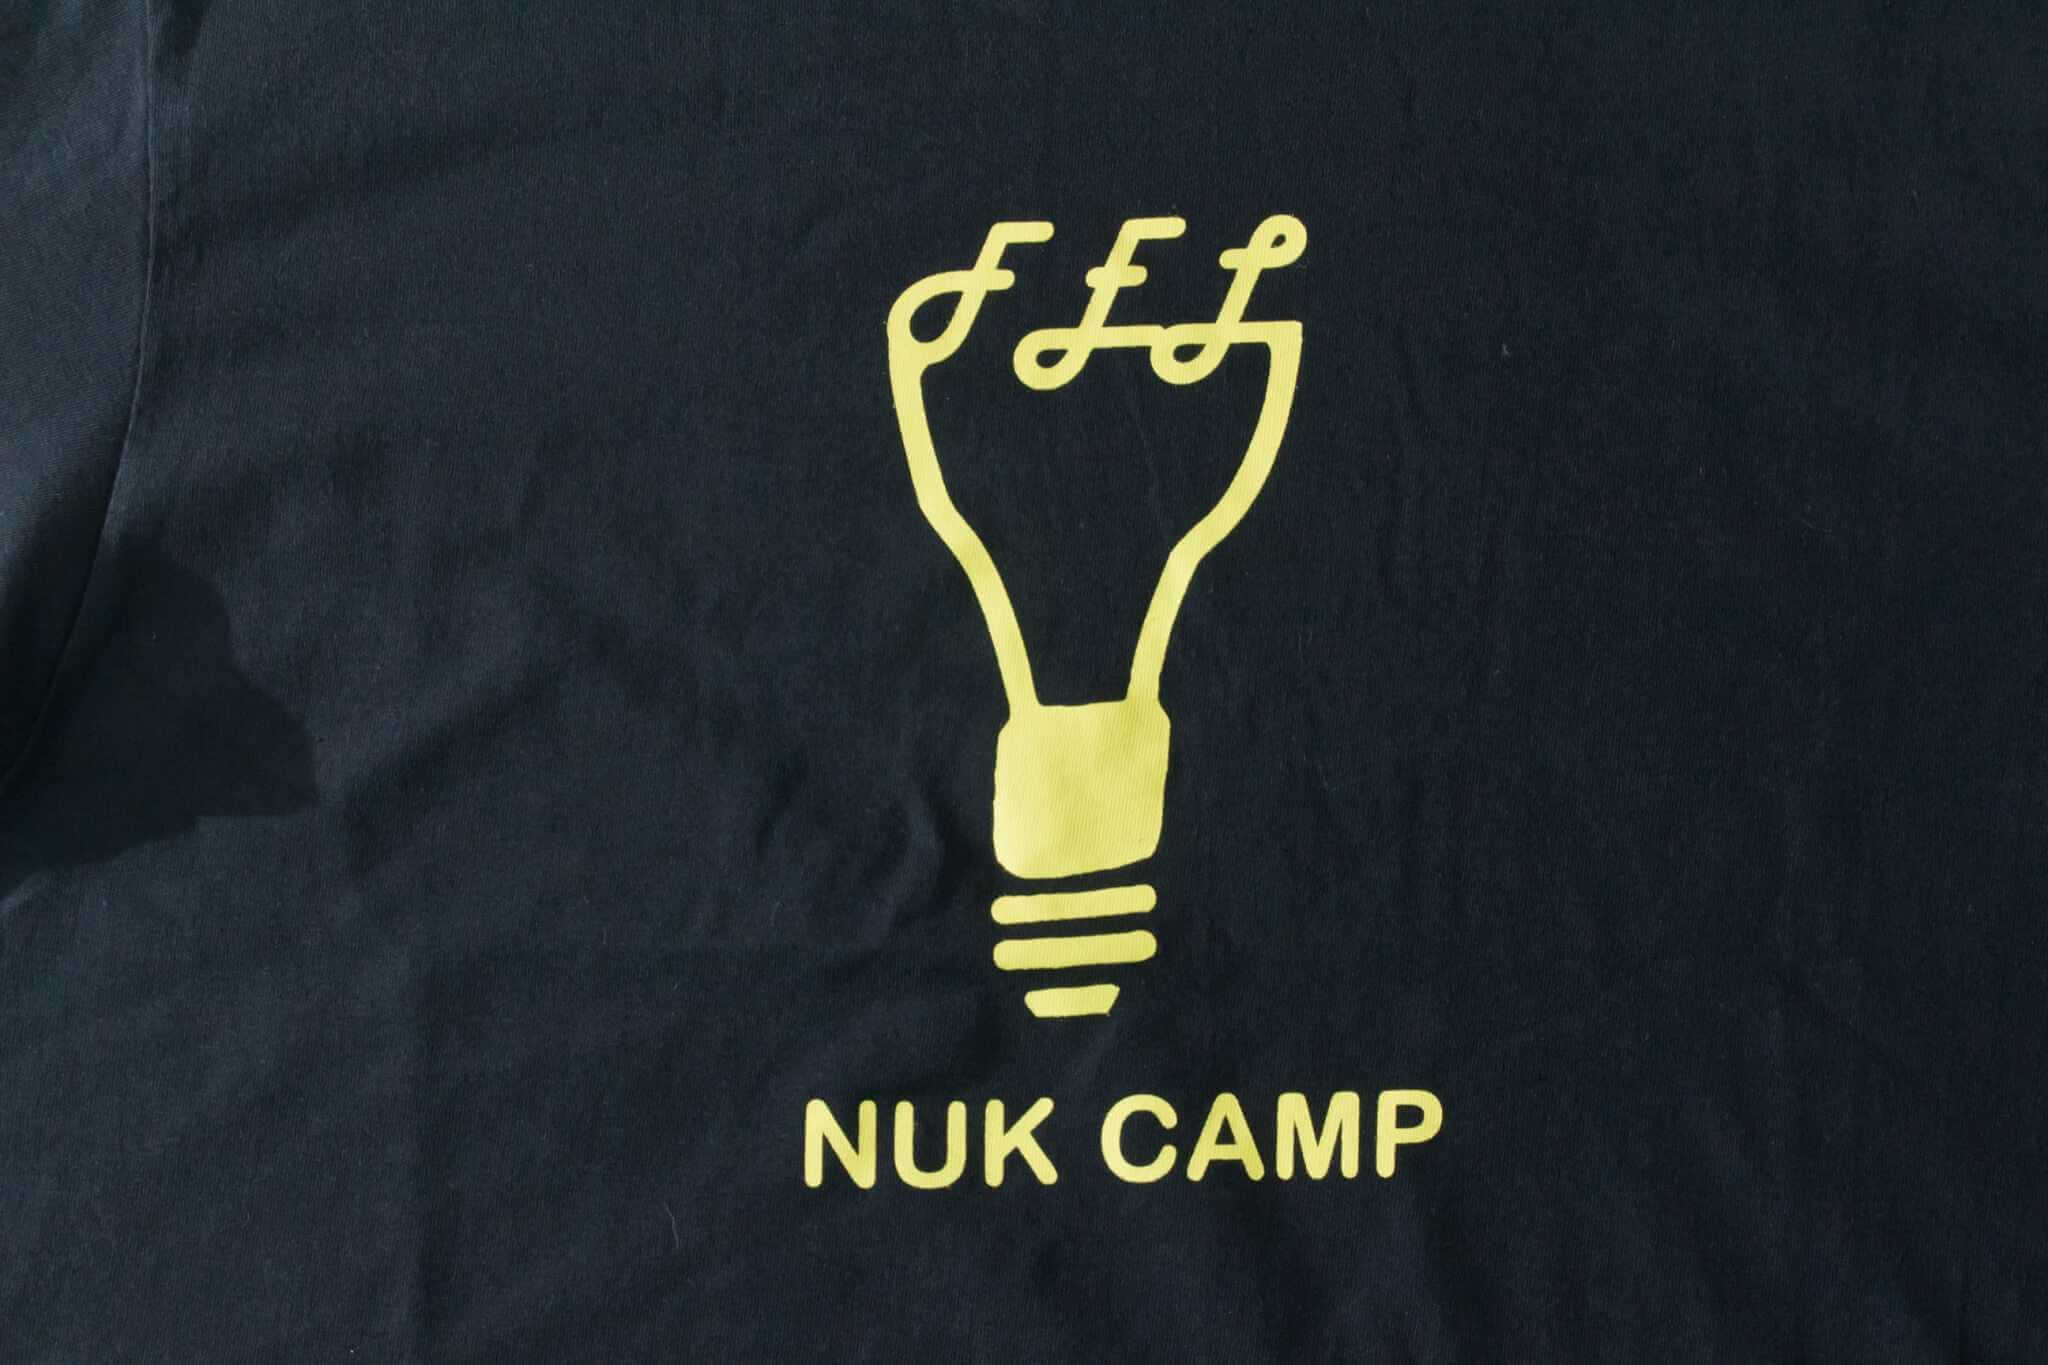 客製化T恤- NUK CAMP 客製T恤的第2張圖(客製化公司制服、班服製作、團體服製作等示意或作品圖)